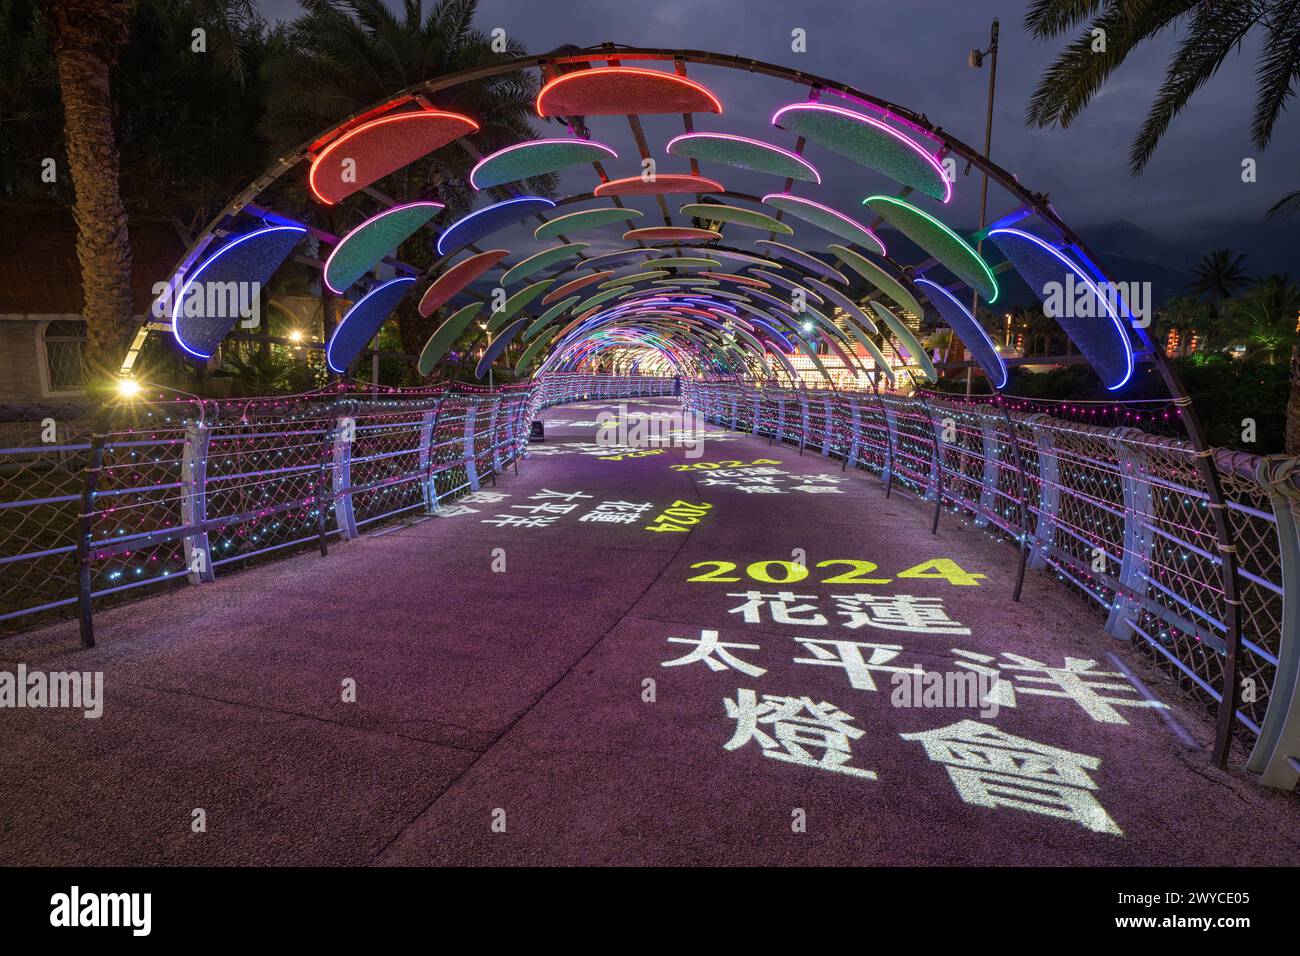 Arche illuminée colorée avec des projections de 2024 ans et des caractères chinois la nuit Banque D'Images